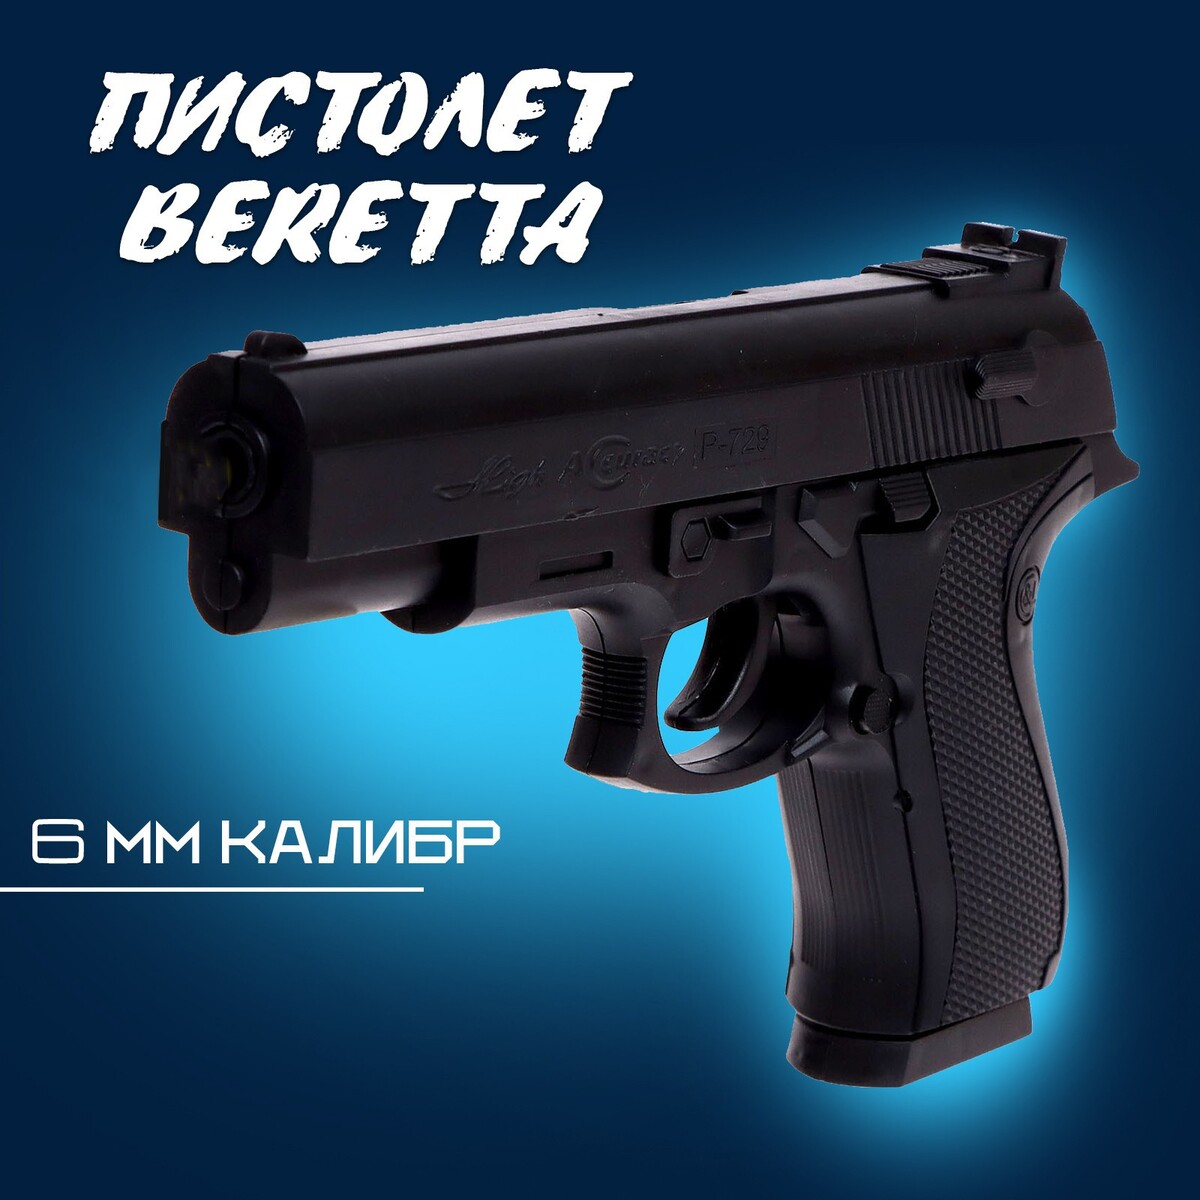 Пистолет beretta, стреляет пульками 6 мм (в комплект не входят) игрушечный набор с пистолетом мишенями и пульками target line santa fe